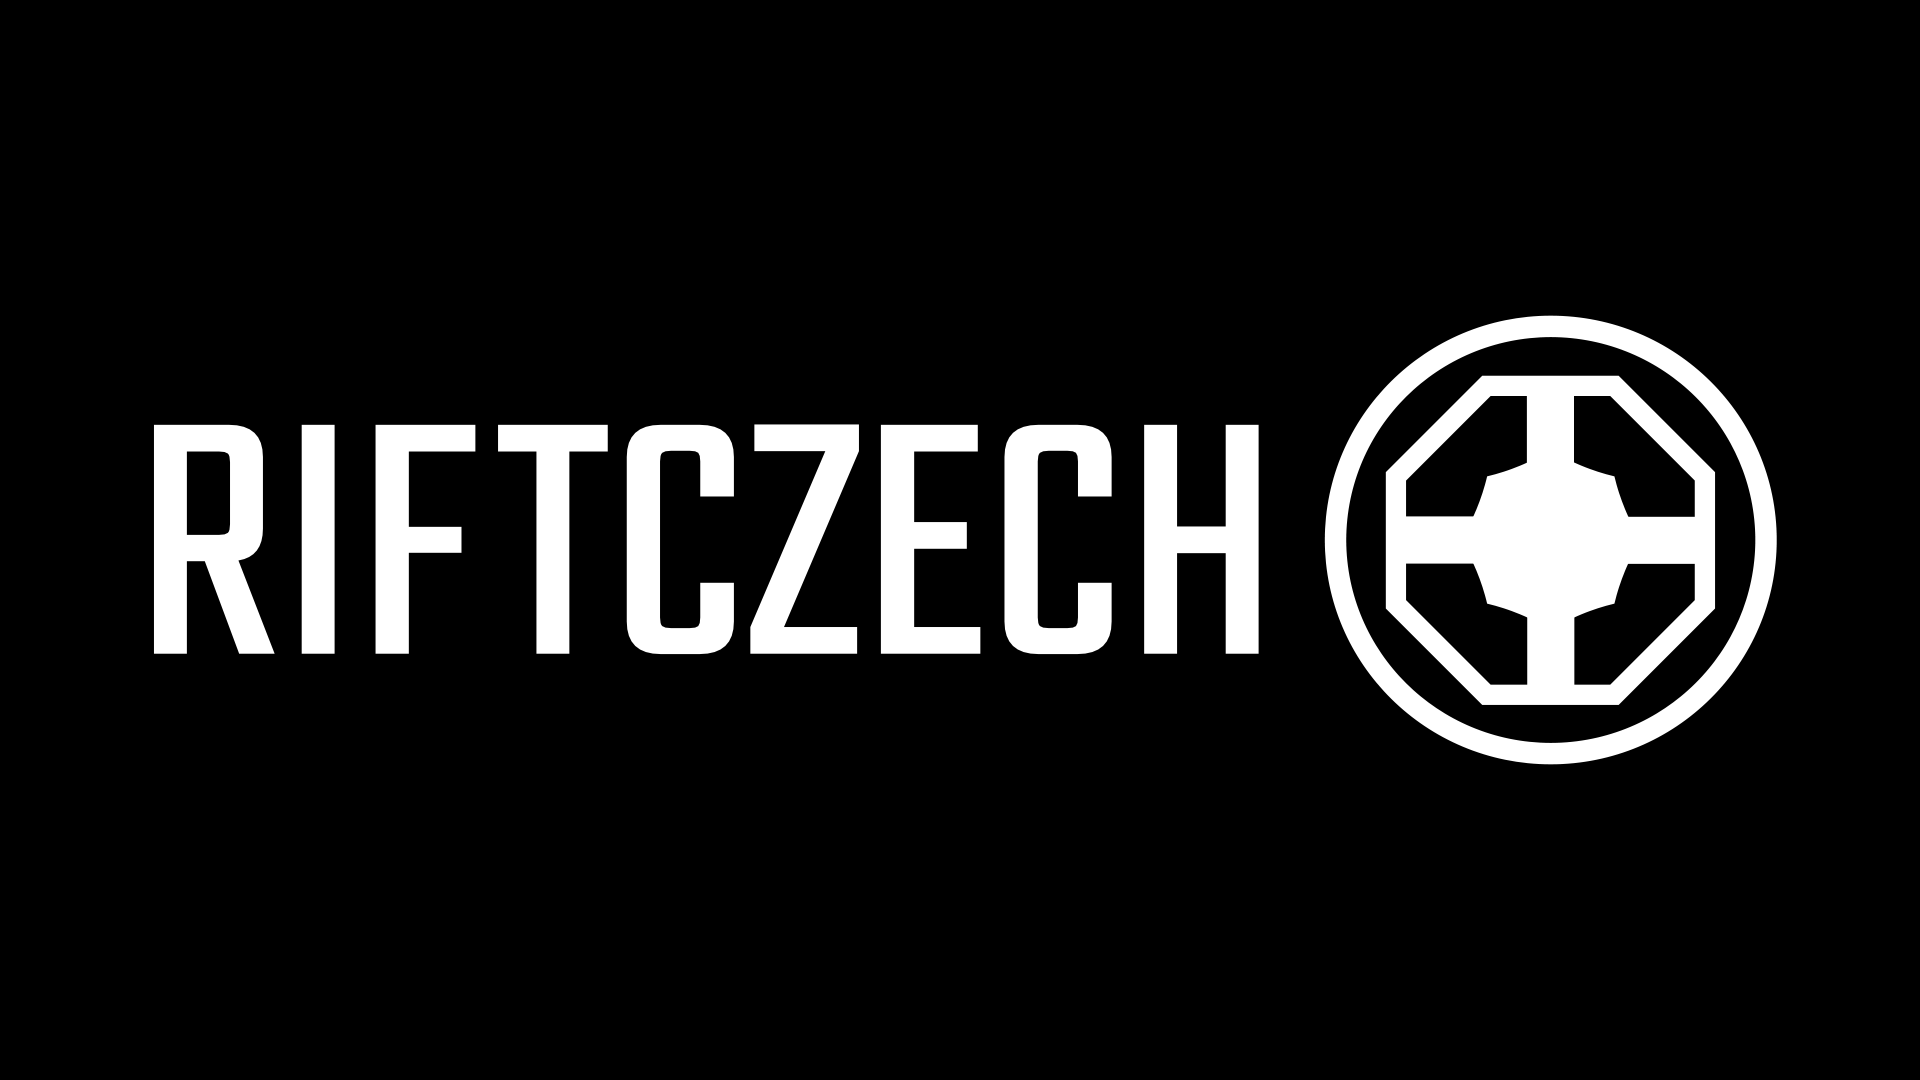 Neúspěch českých týmů v Masters, nejhorší pětka LEC? První díl podcastu RIFTCZECH!